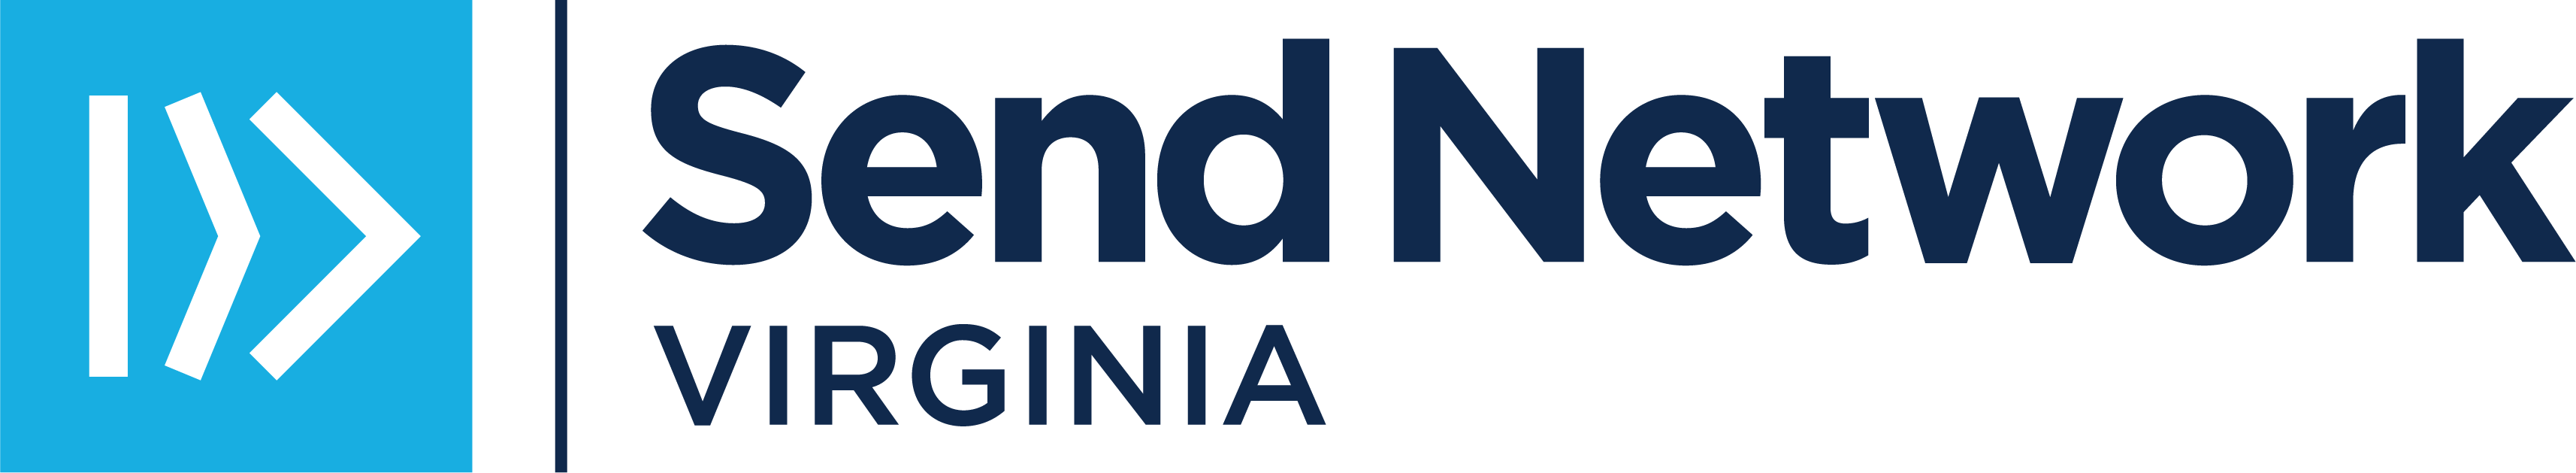 SN Virginia Logo_BlueNavy